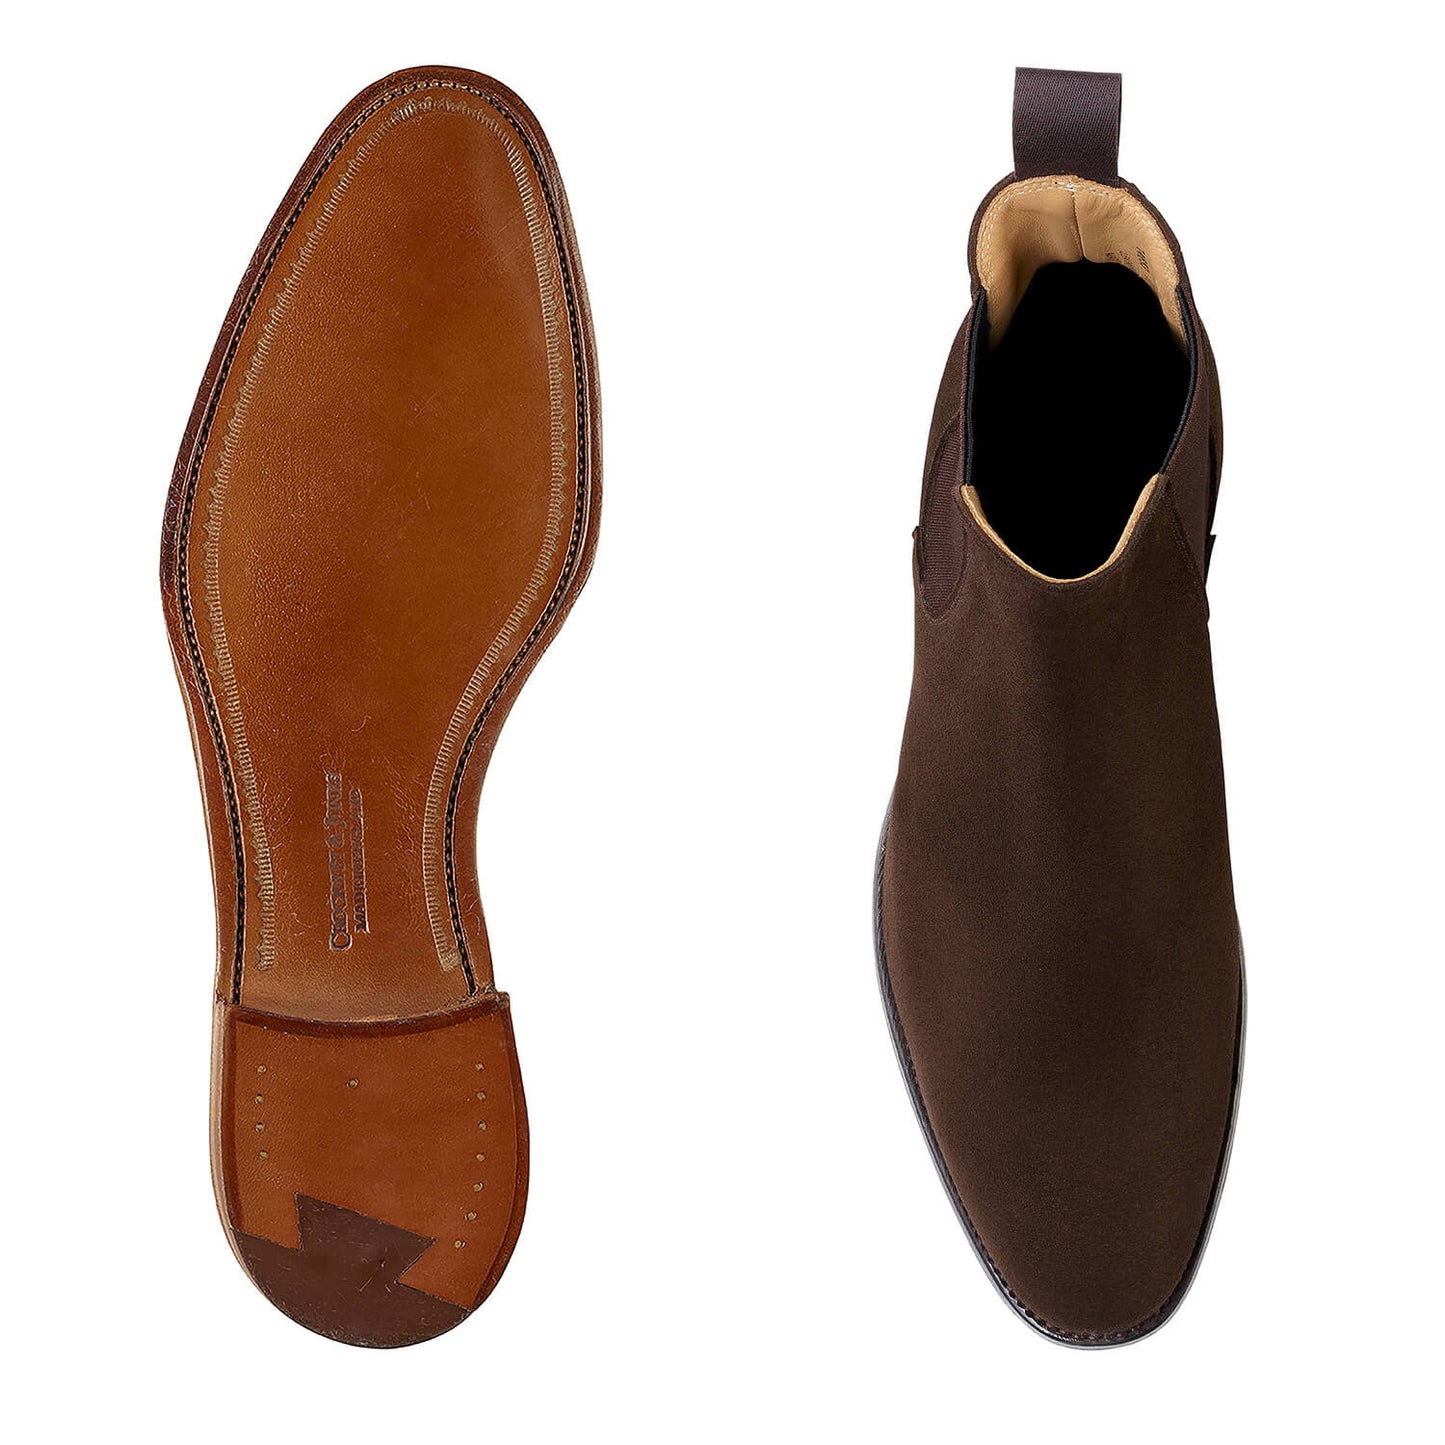 Bonnie, dark brown suede chelsea boot made in leather, branded Crockett & Jones